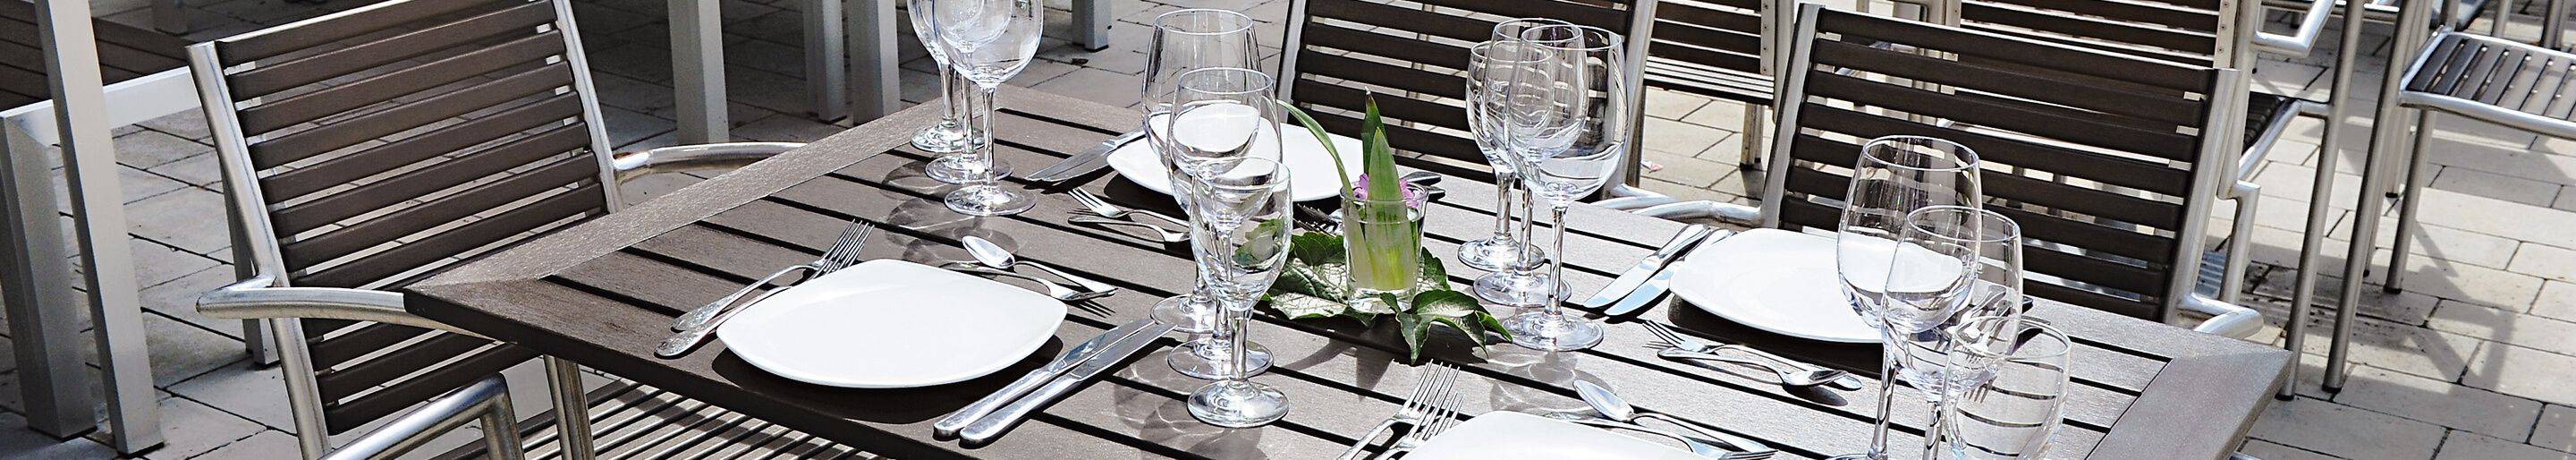 Weatherproof table tops for your restaurant, hotel or beer garden